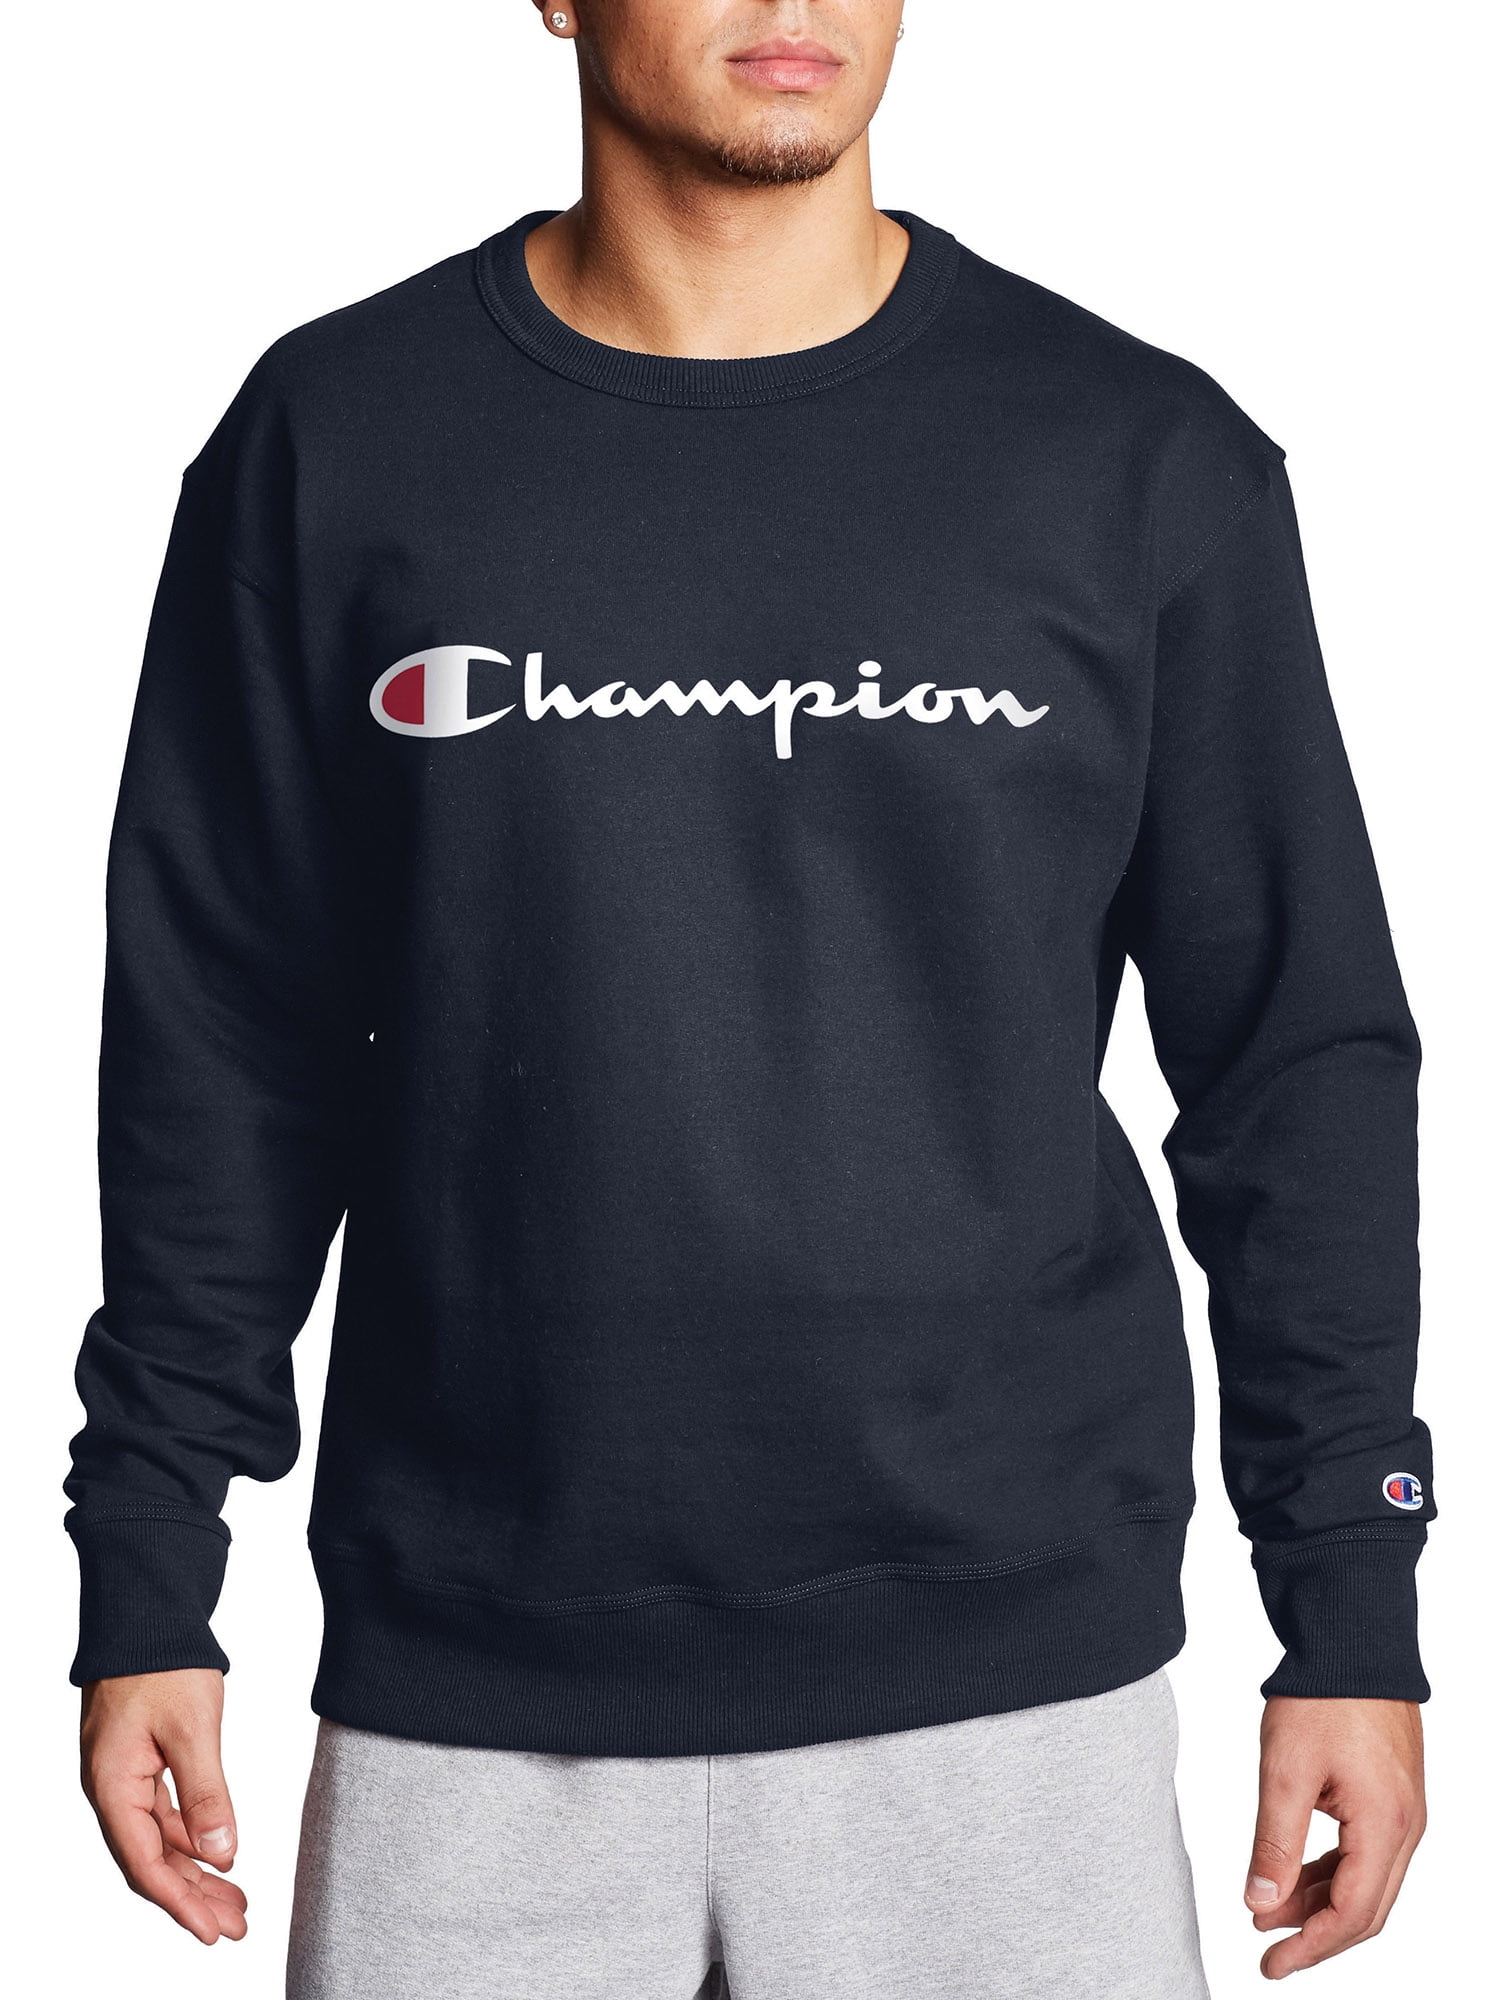 Champion Men's Powerblend Applique Crew Sweatshirt - Walmart.com